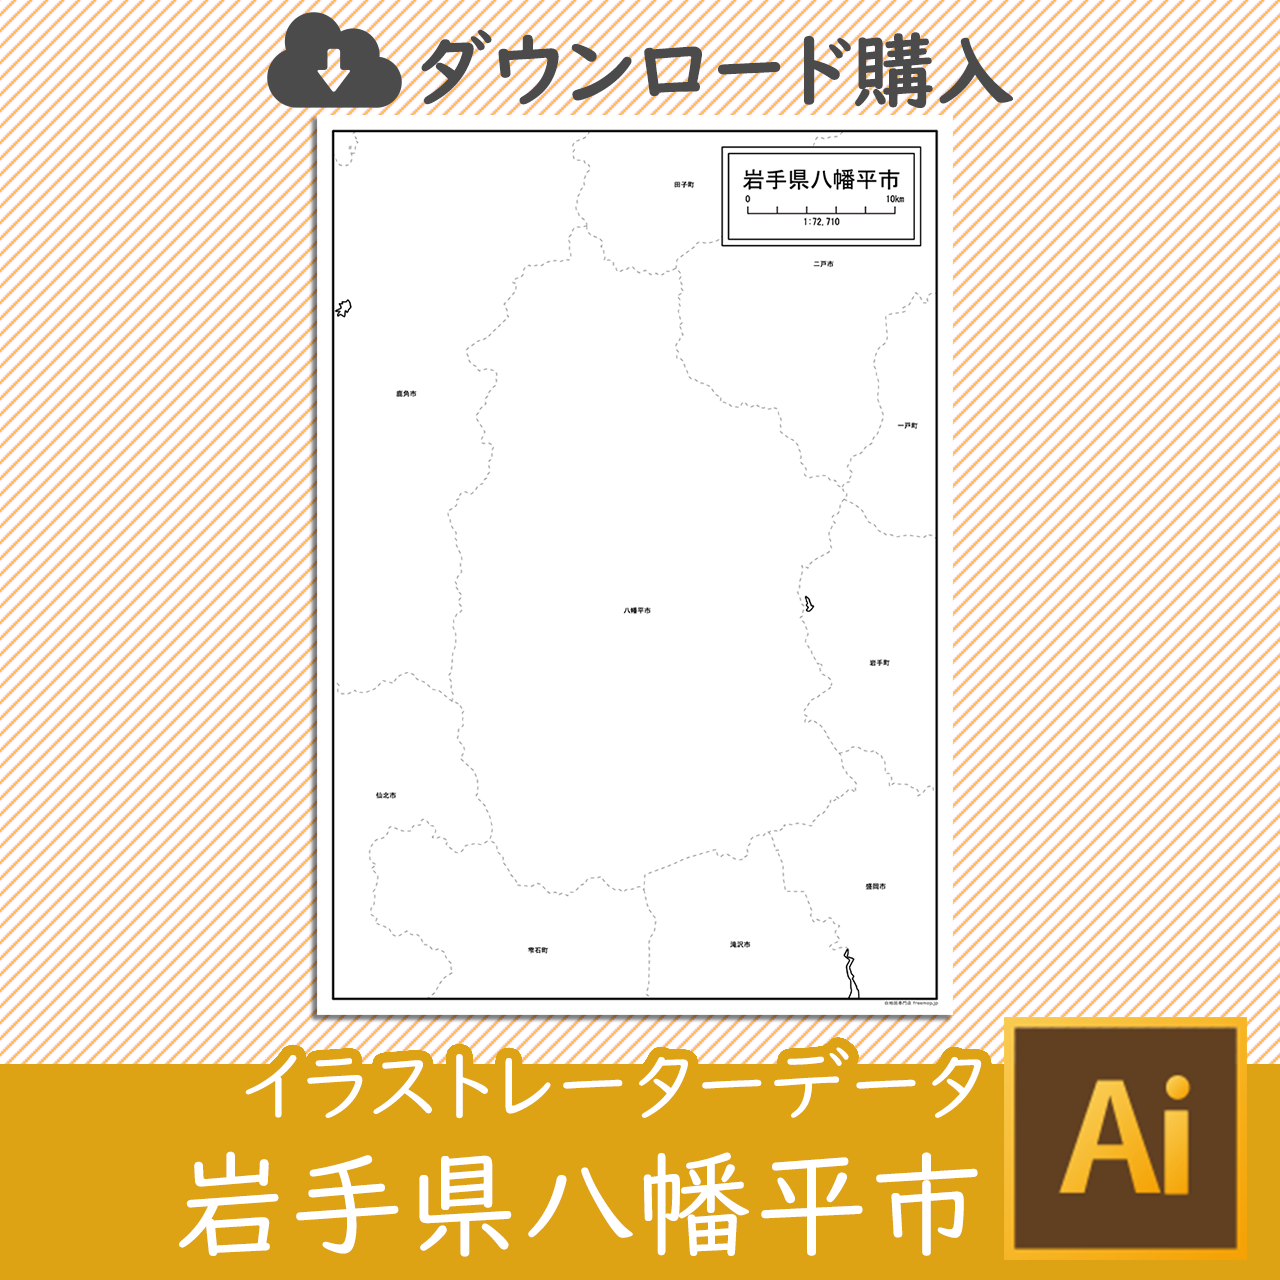 八幡平市のaiデータのサムネイル画像